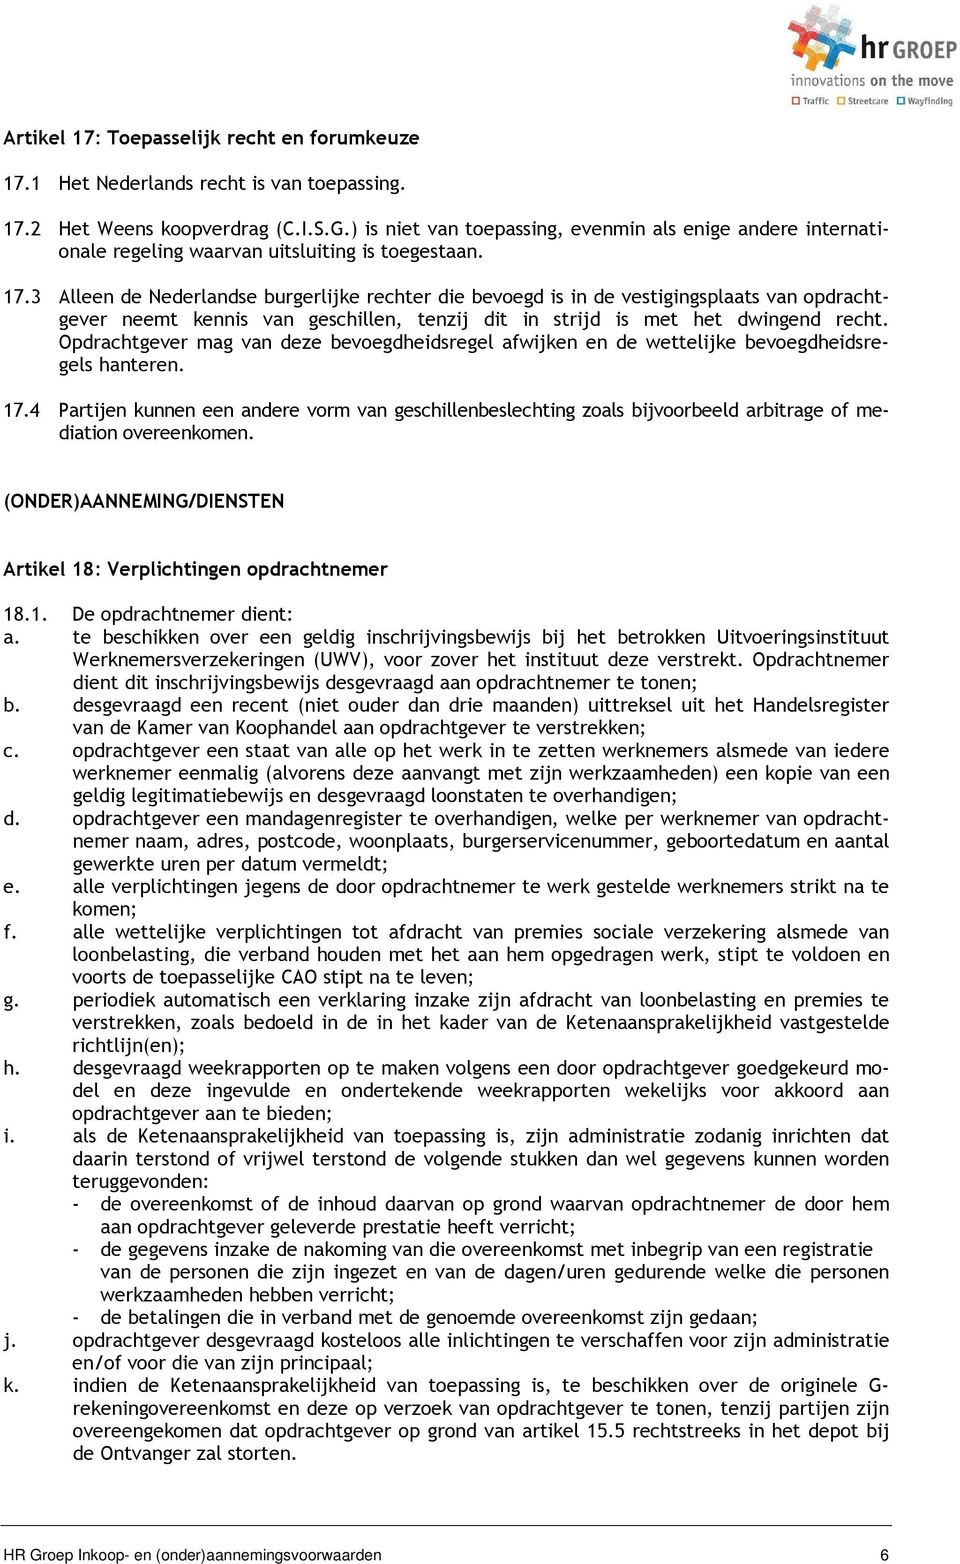 3 Alleen de Nederlandse burgerlijke rechter die bevoegd is in de vestigingsplaats van opdrachtgever neemt kennis van geschillen, tenzij dit in strijd is met het dwingend recht.